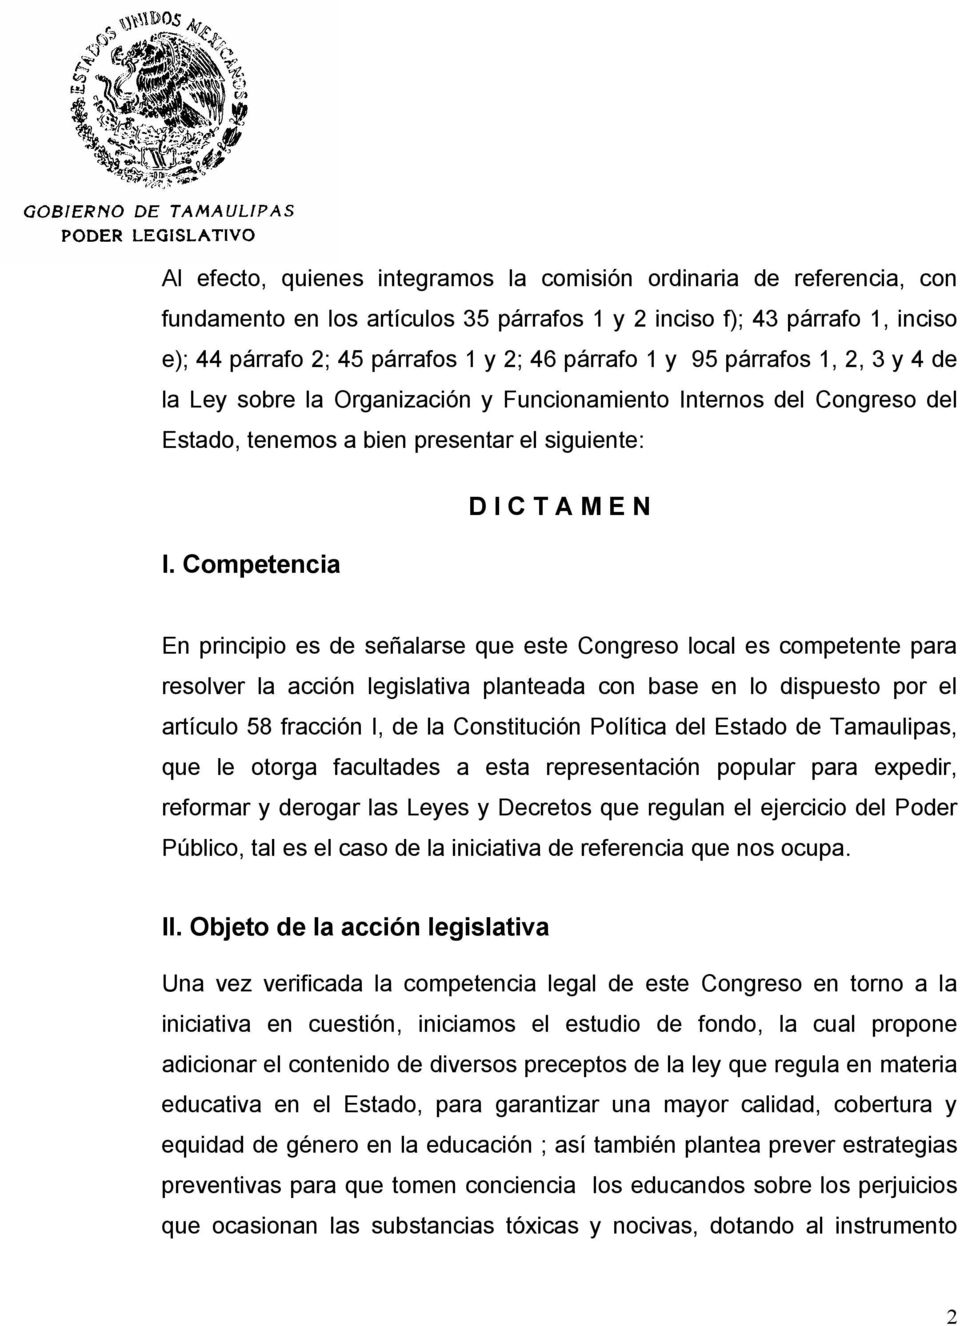 Competencia En principio es de señalarse que este Congreso local es competente para resolver la acción legislativa planteada con base en lo dispuesto por el artículo 58 fracción I, de la Constitución